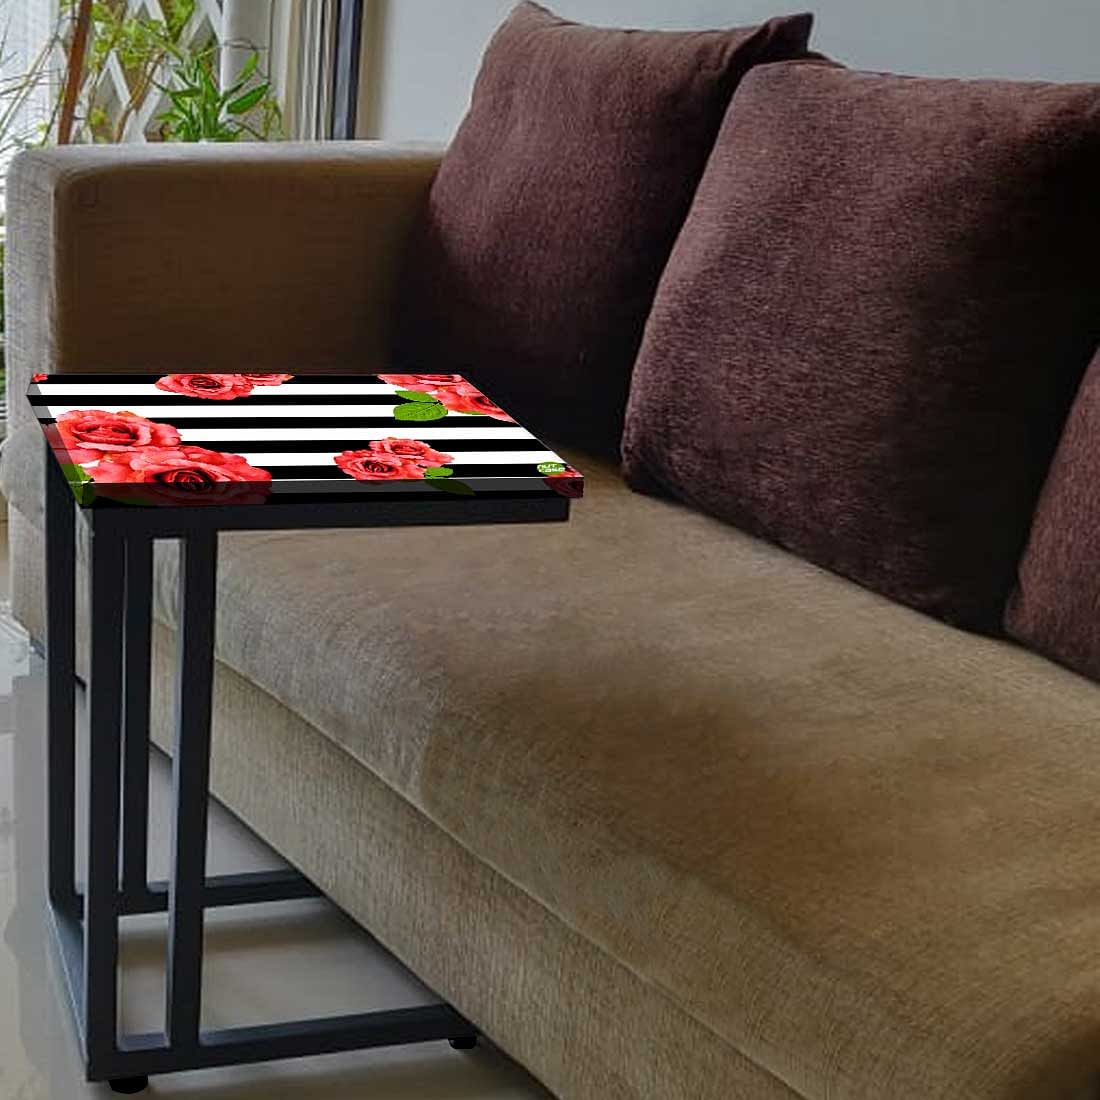 Designer Floral C Side Table - Red Flower Nutcase